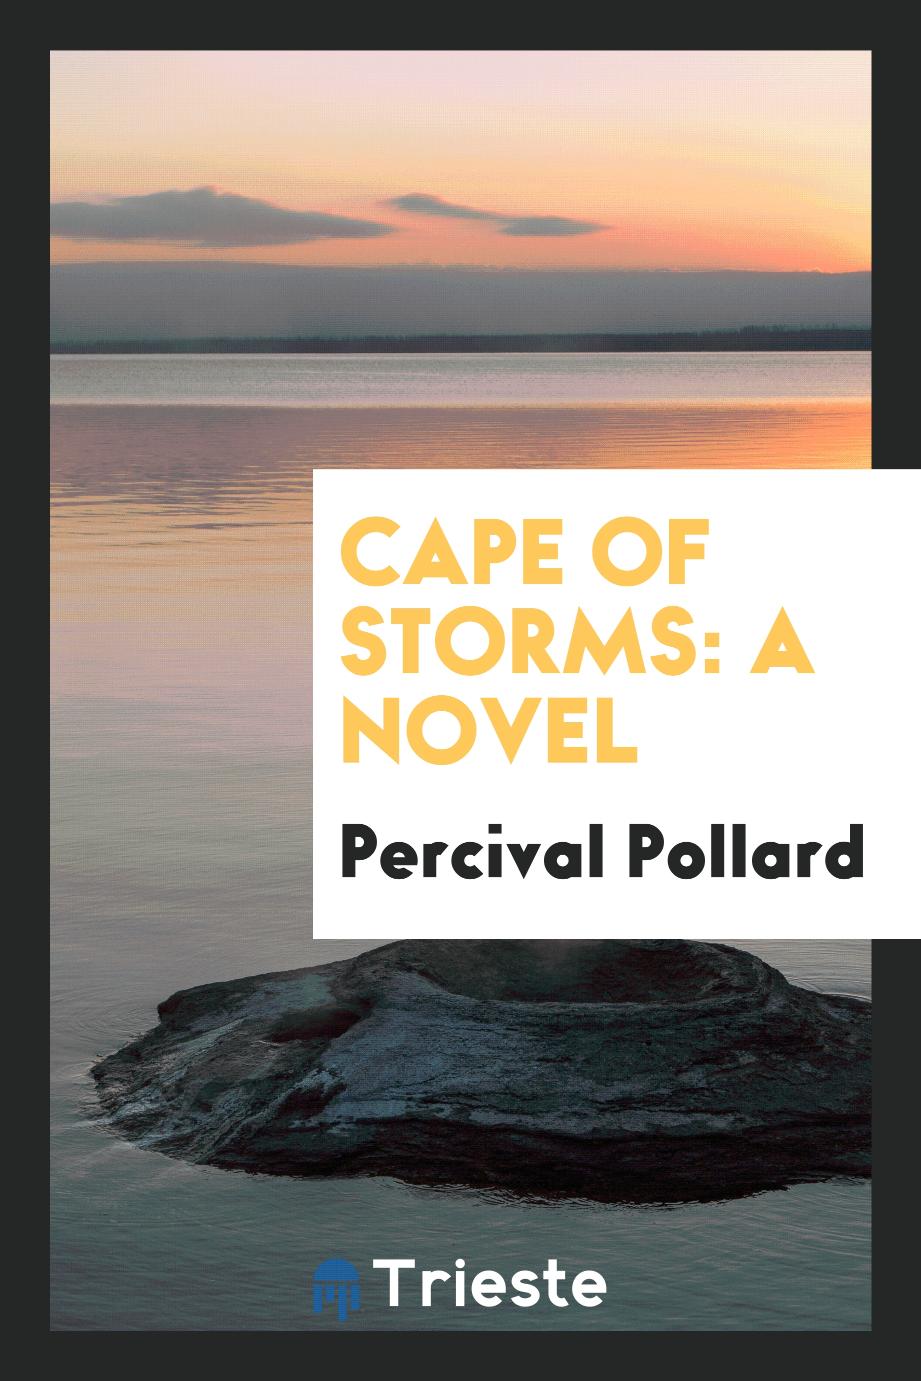 Cape of Storms: a novel